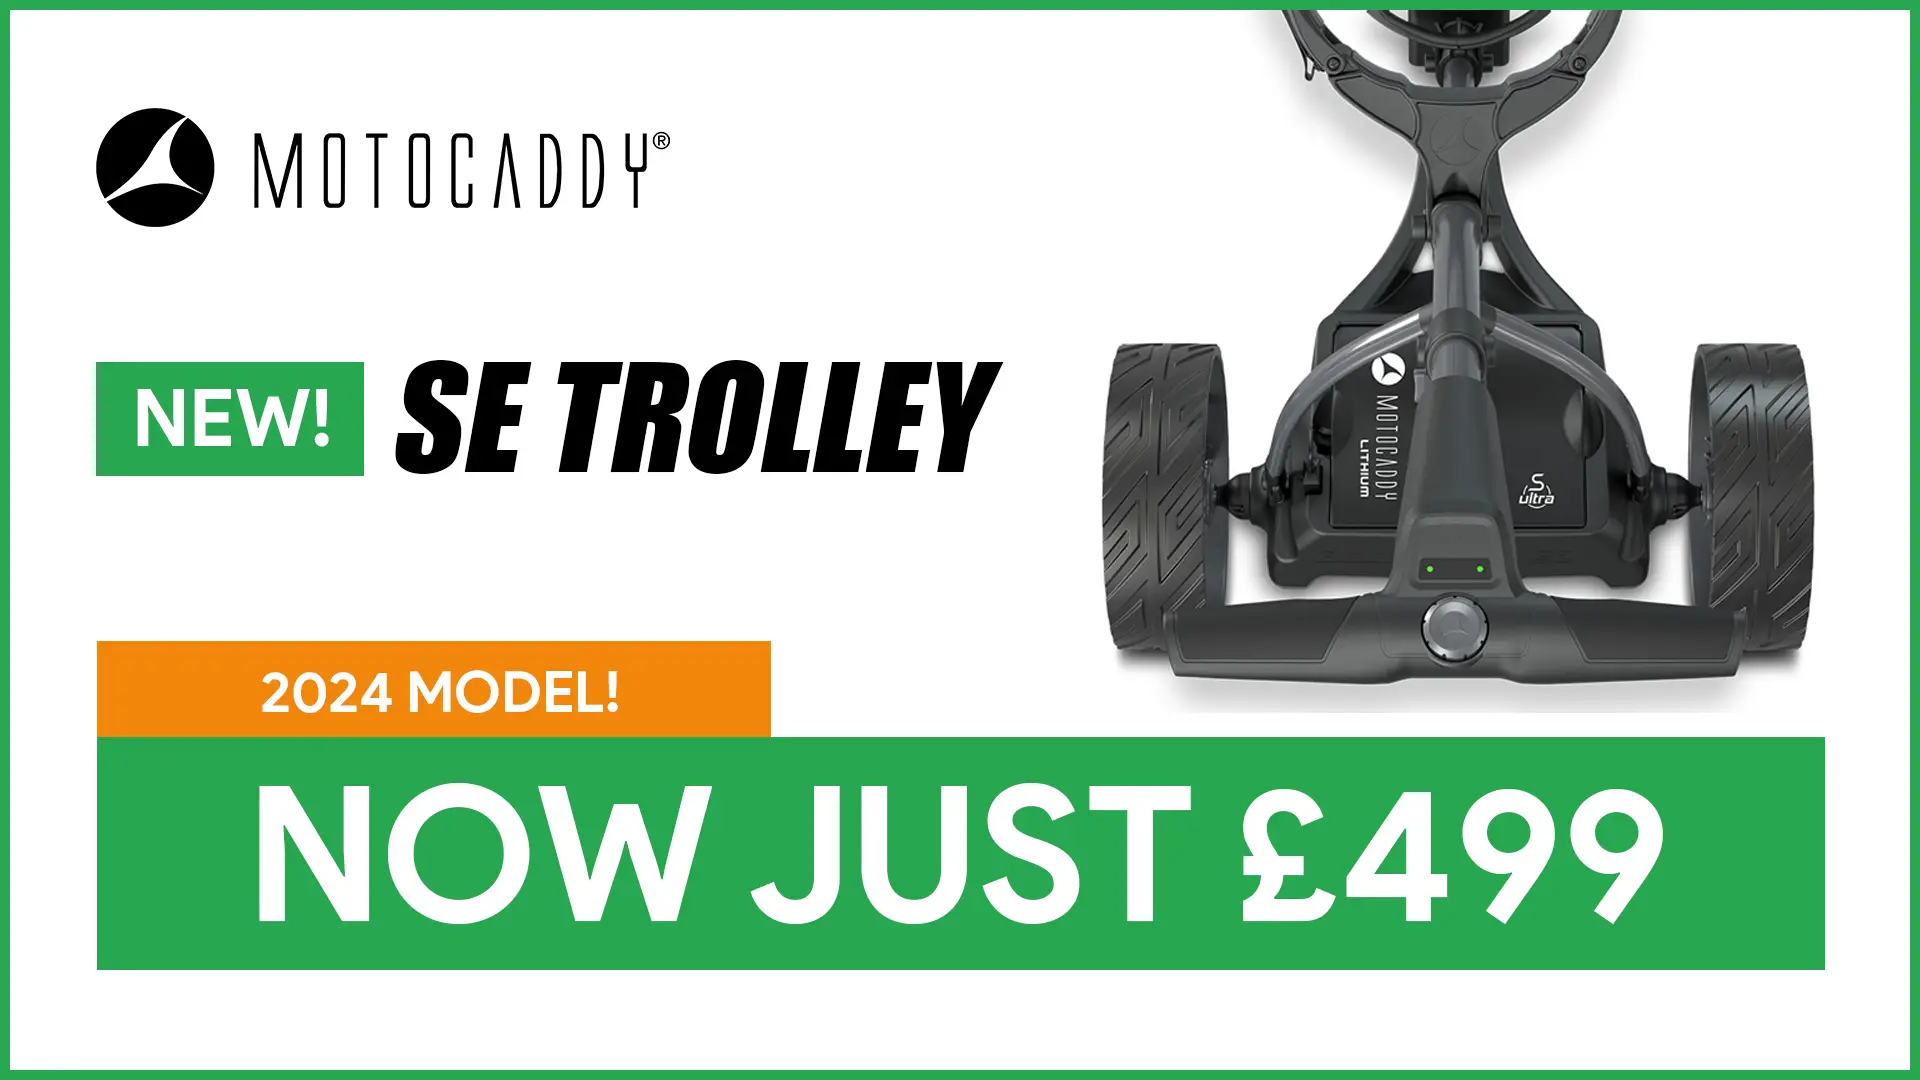 Motocaddy SE Trolley £499